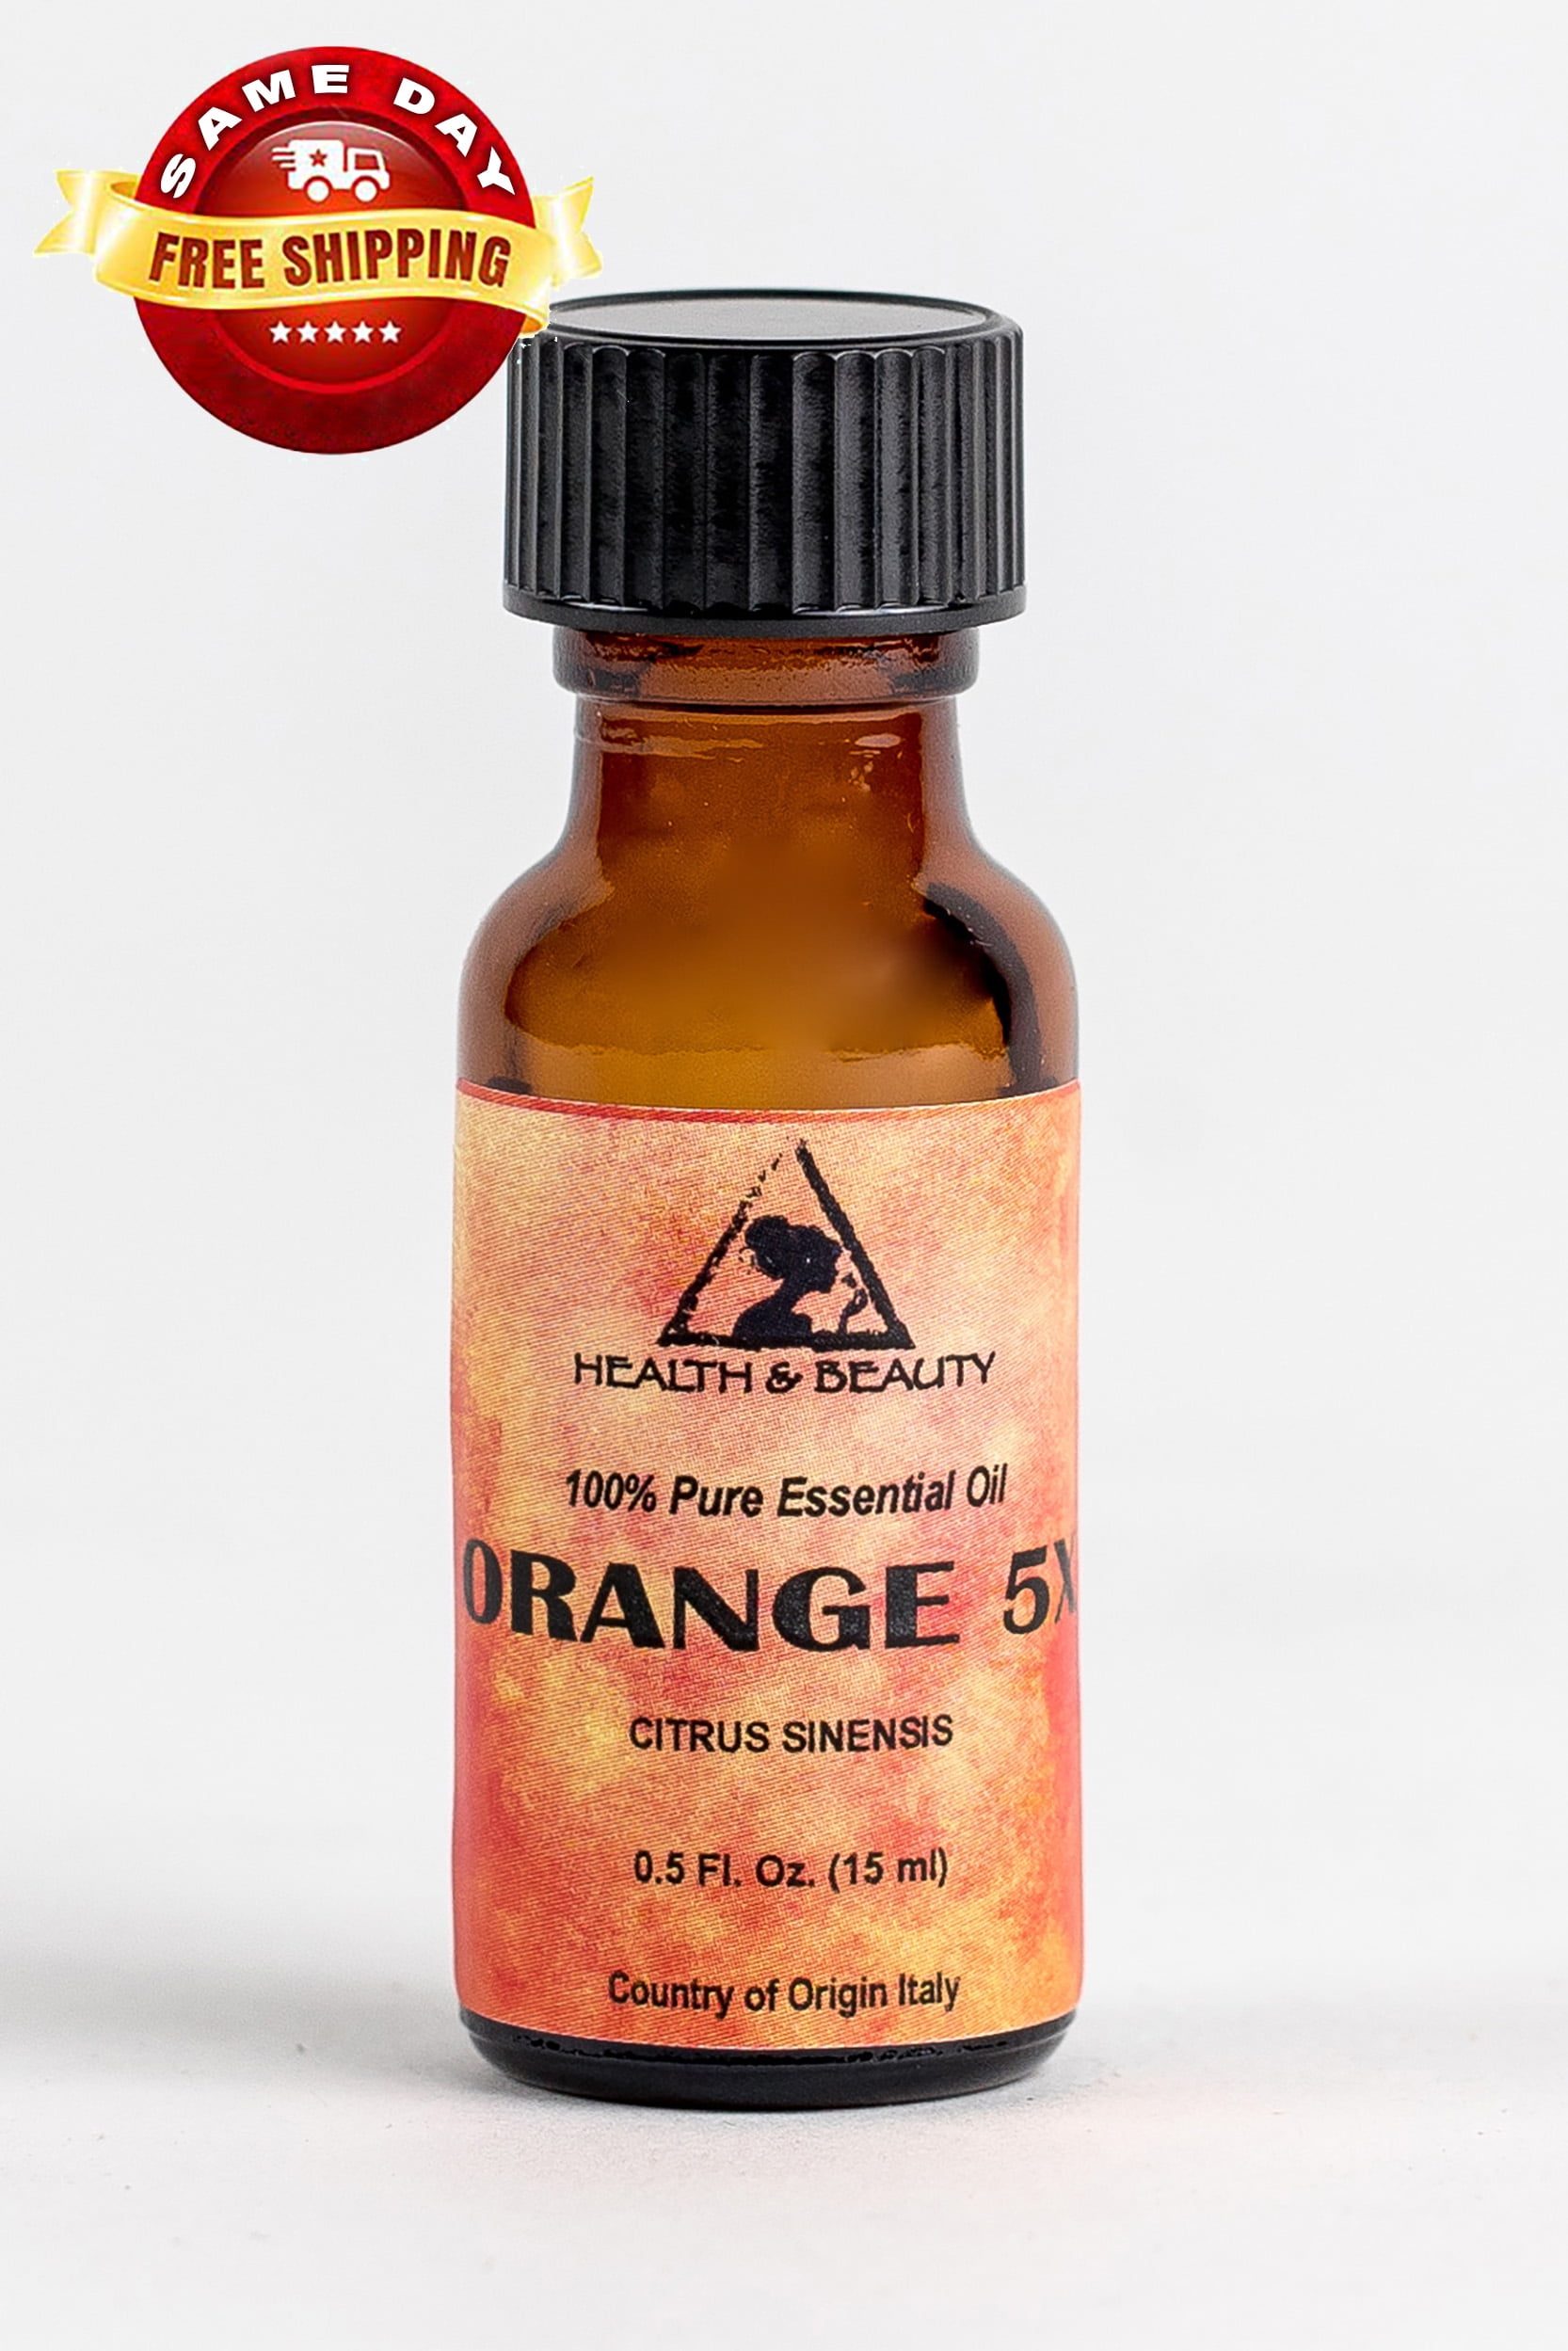 Tinh dầu cam 5X hữu cơ là một sản phẩm tuyệt vời cho việc xông phòng. Nếu bạn muốn tìm hiểu thêm về tinh dầu cam và cách sử dụng chúng trong việc xông phòng, hãy xem hình ảnh liên quan để tìm hiểu thêm về tinh dầu cam 5X hữu cơ.